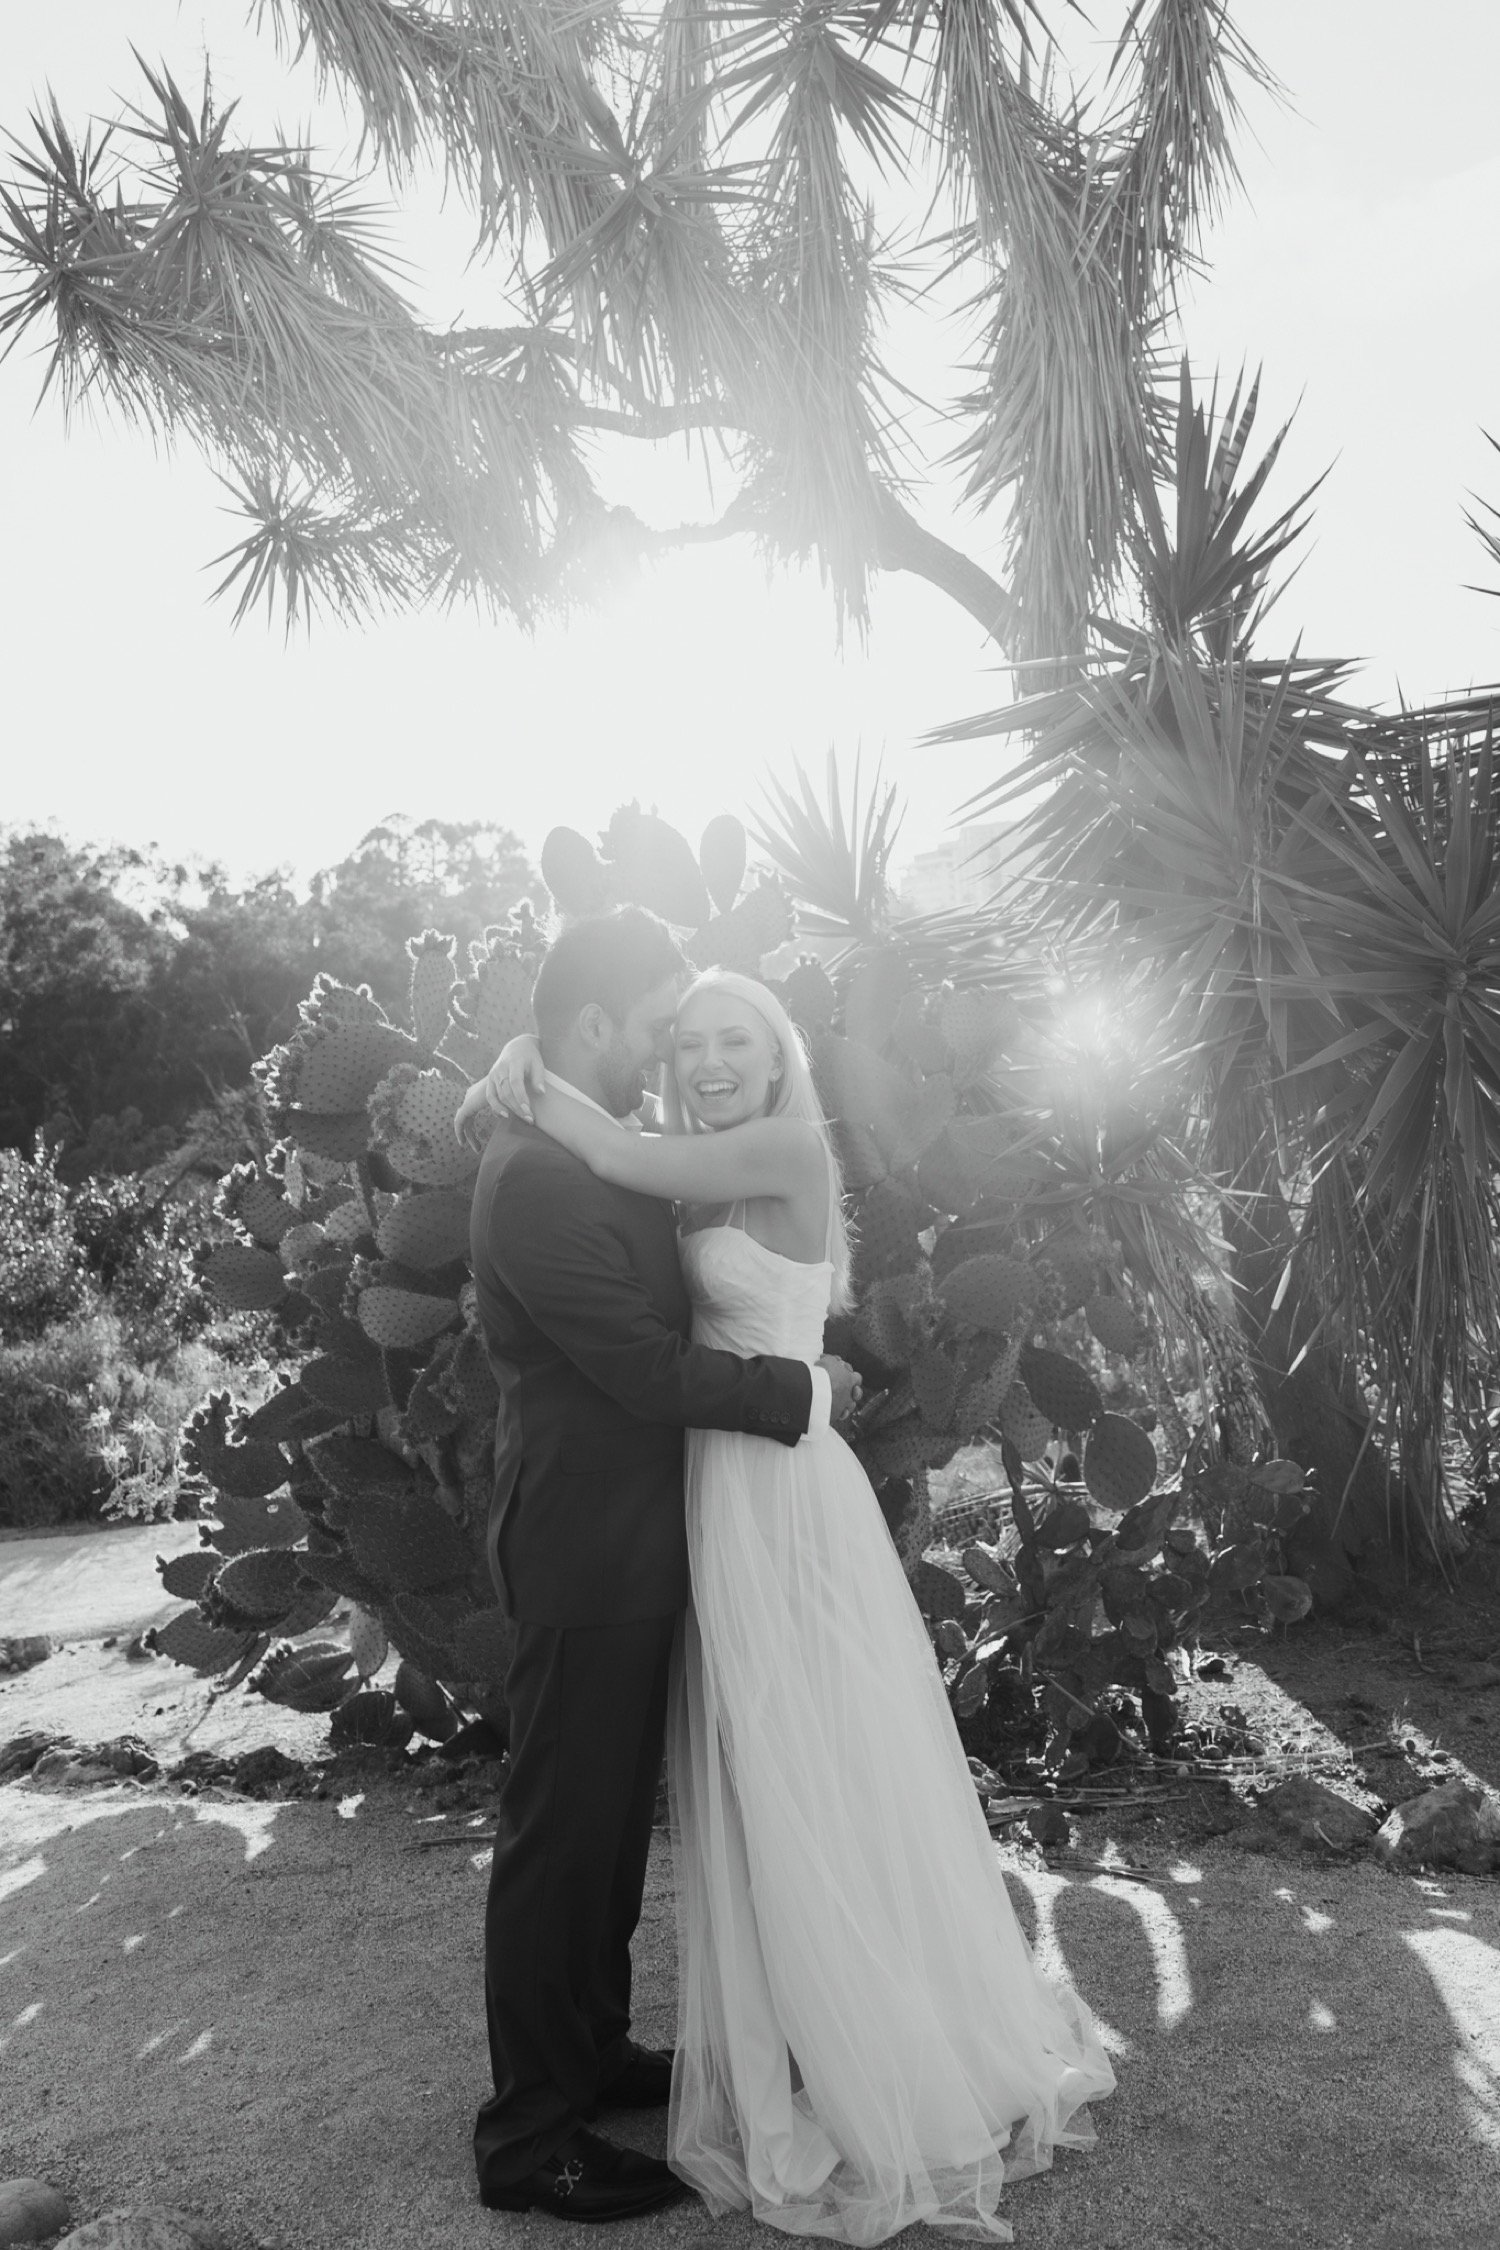 Dina Diaz California Wedding Photographer Old Cactus Garden Engagement Journal Post Image 7.jpg